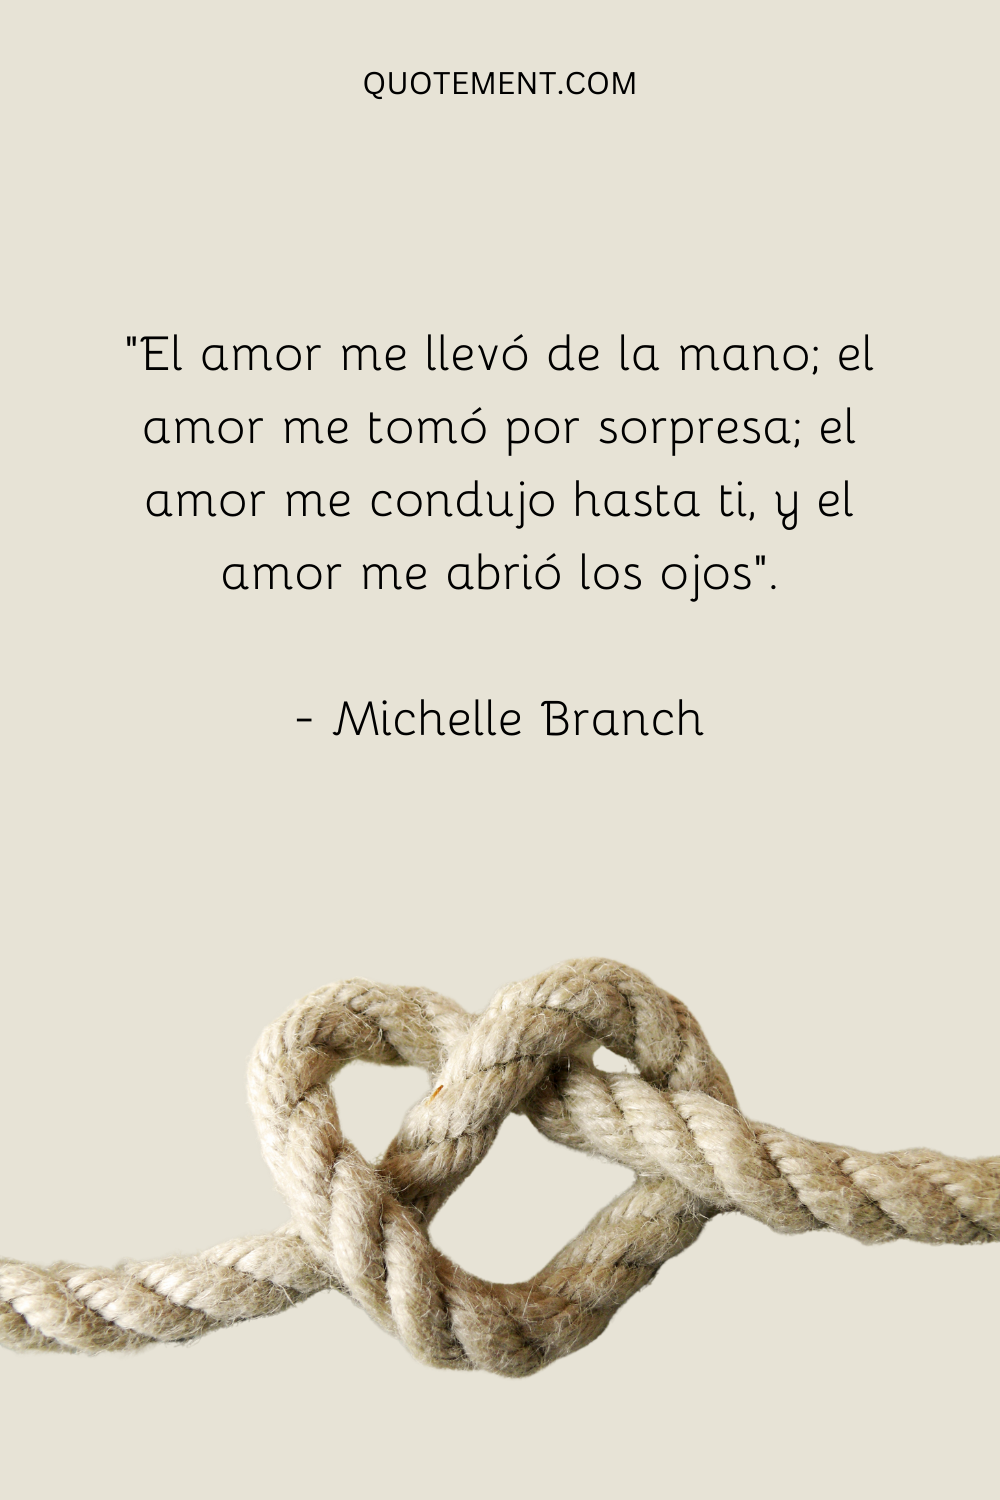 "El amor me llevó de la mano; el amor me tomó por sorpresa; el amor me condujo hasta ti, y el amor me abrió los ojos". - Michelle Branch